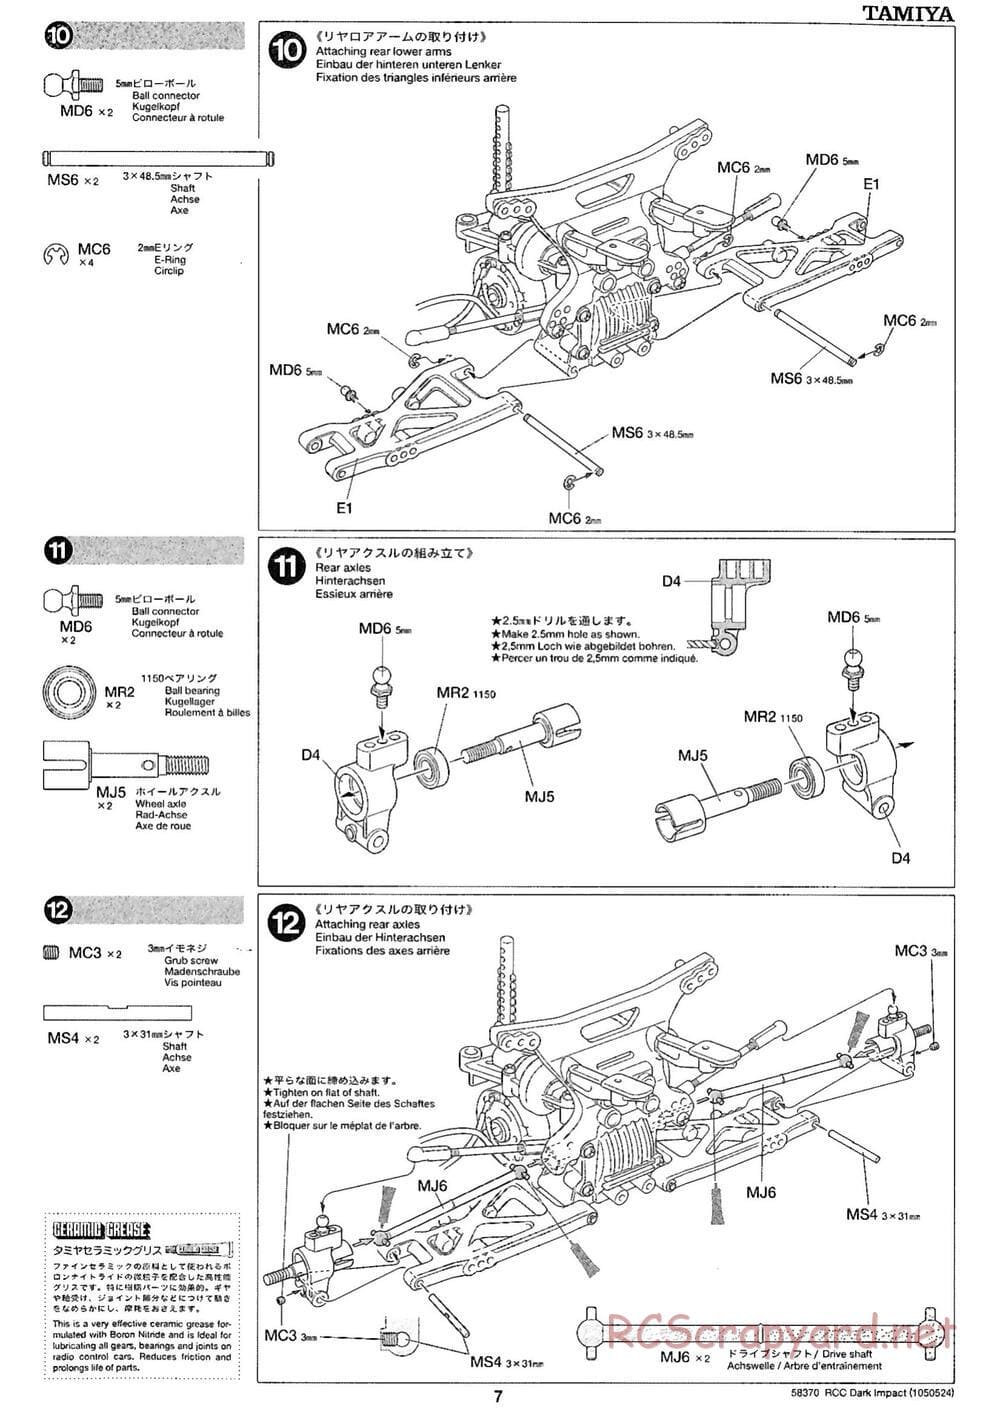 Tamiya - Dark Impact Chassis - Manual - Page 7